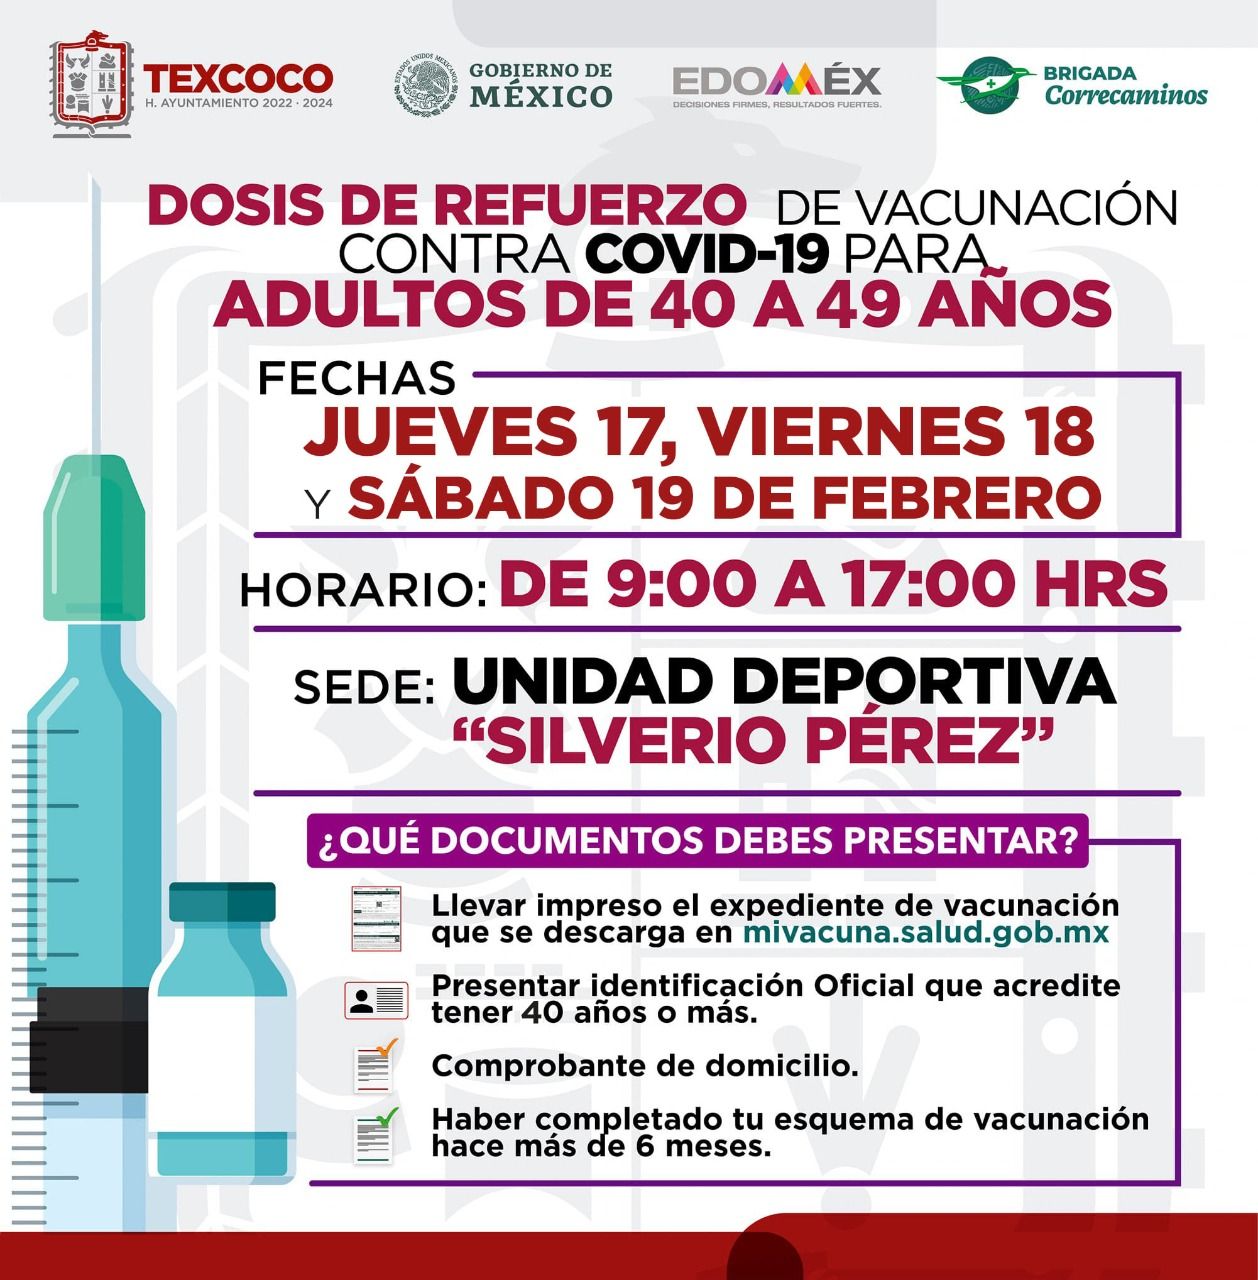                                                                                                    Vacunación en Texcoco para rezagados y adultos de 40 a 49  y de 30 a 39 años